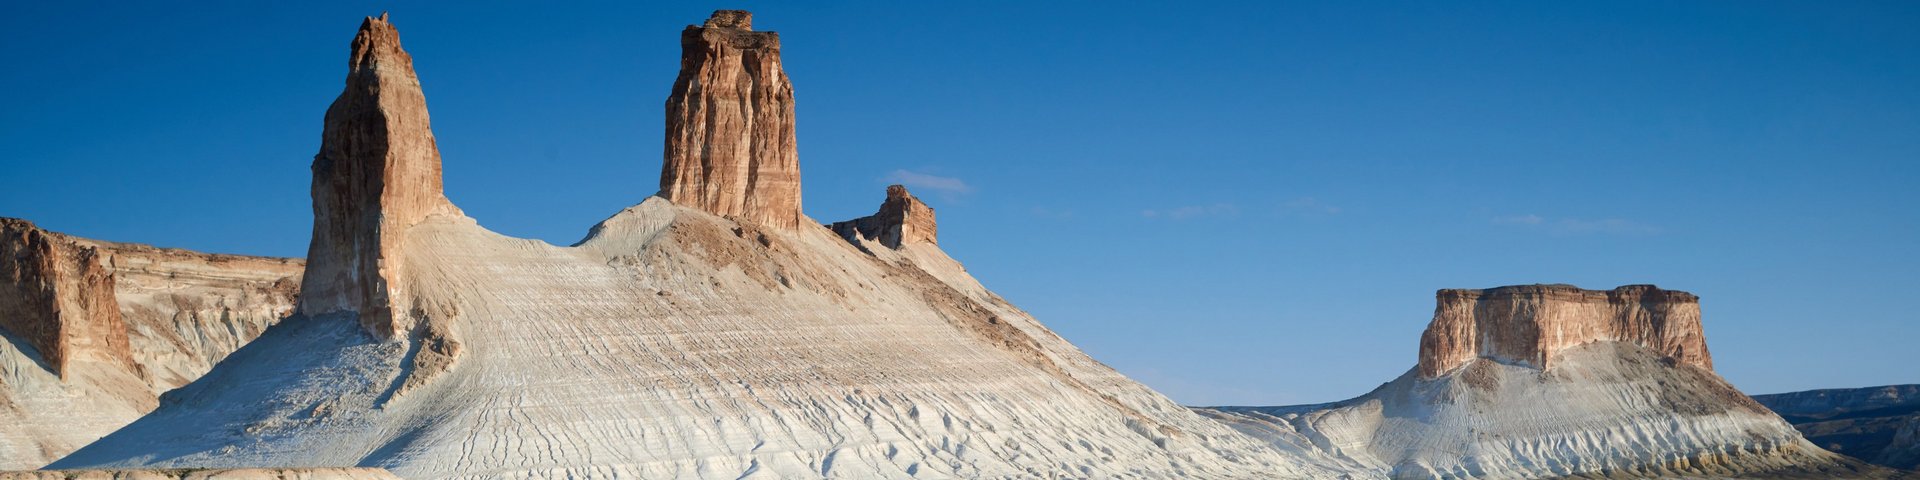 Gesteinsformationen des Ustjurt Plateaus in Kasachstan